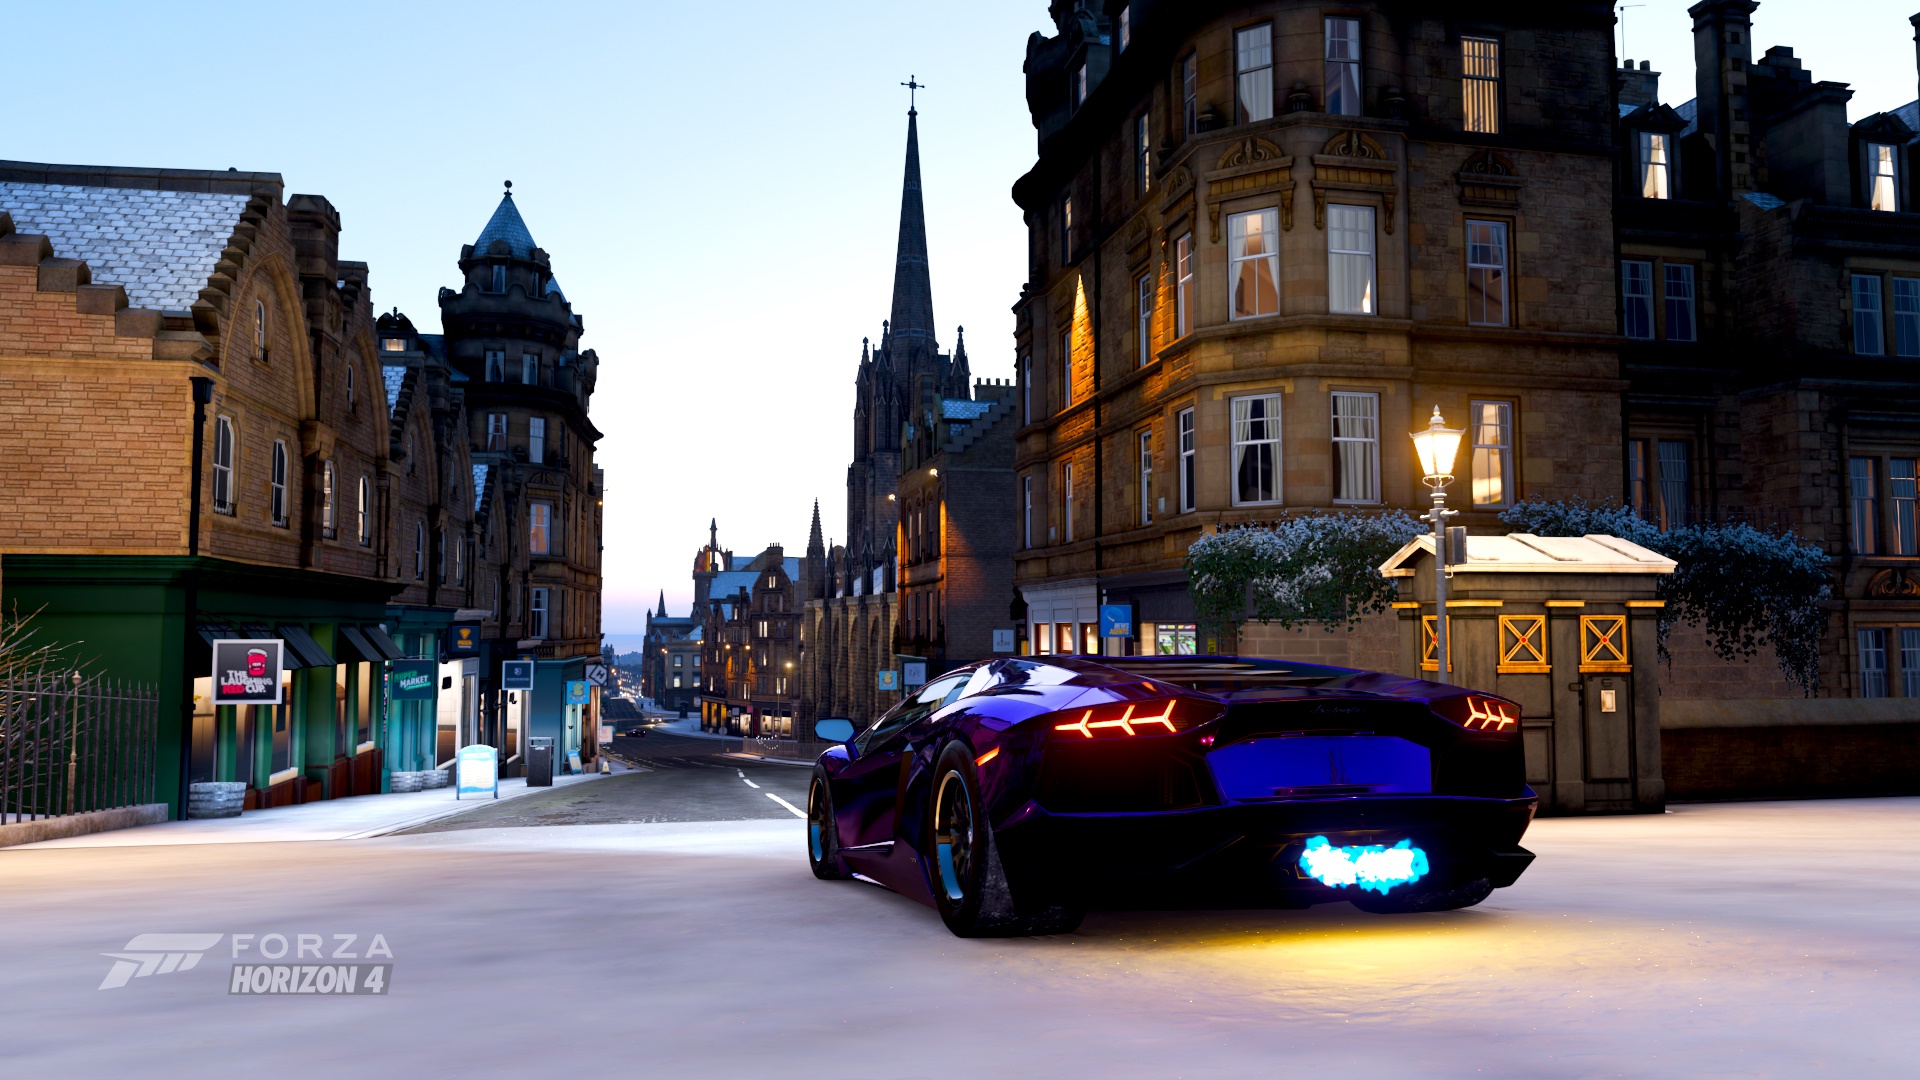 Forza Horizon 4 Lamborghini Lamborghini Aventador LP750 4 SV Edinburgh Video Games 1920x1080